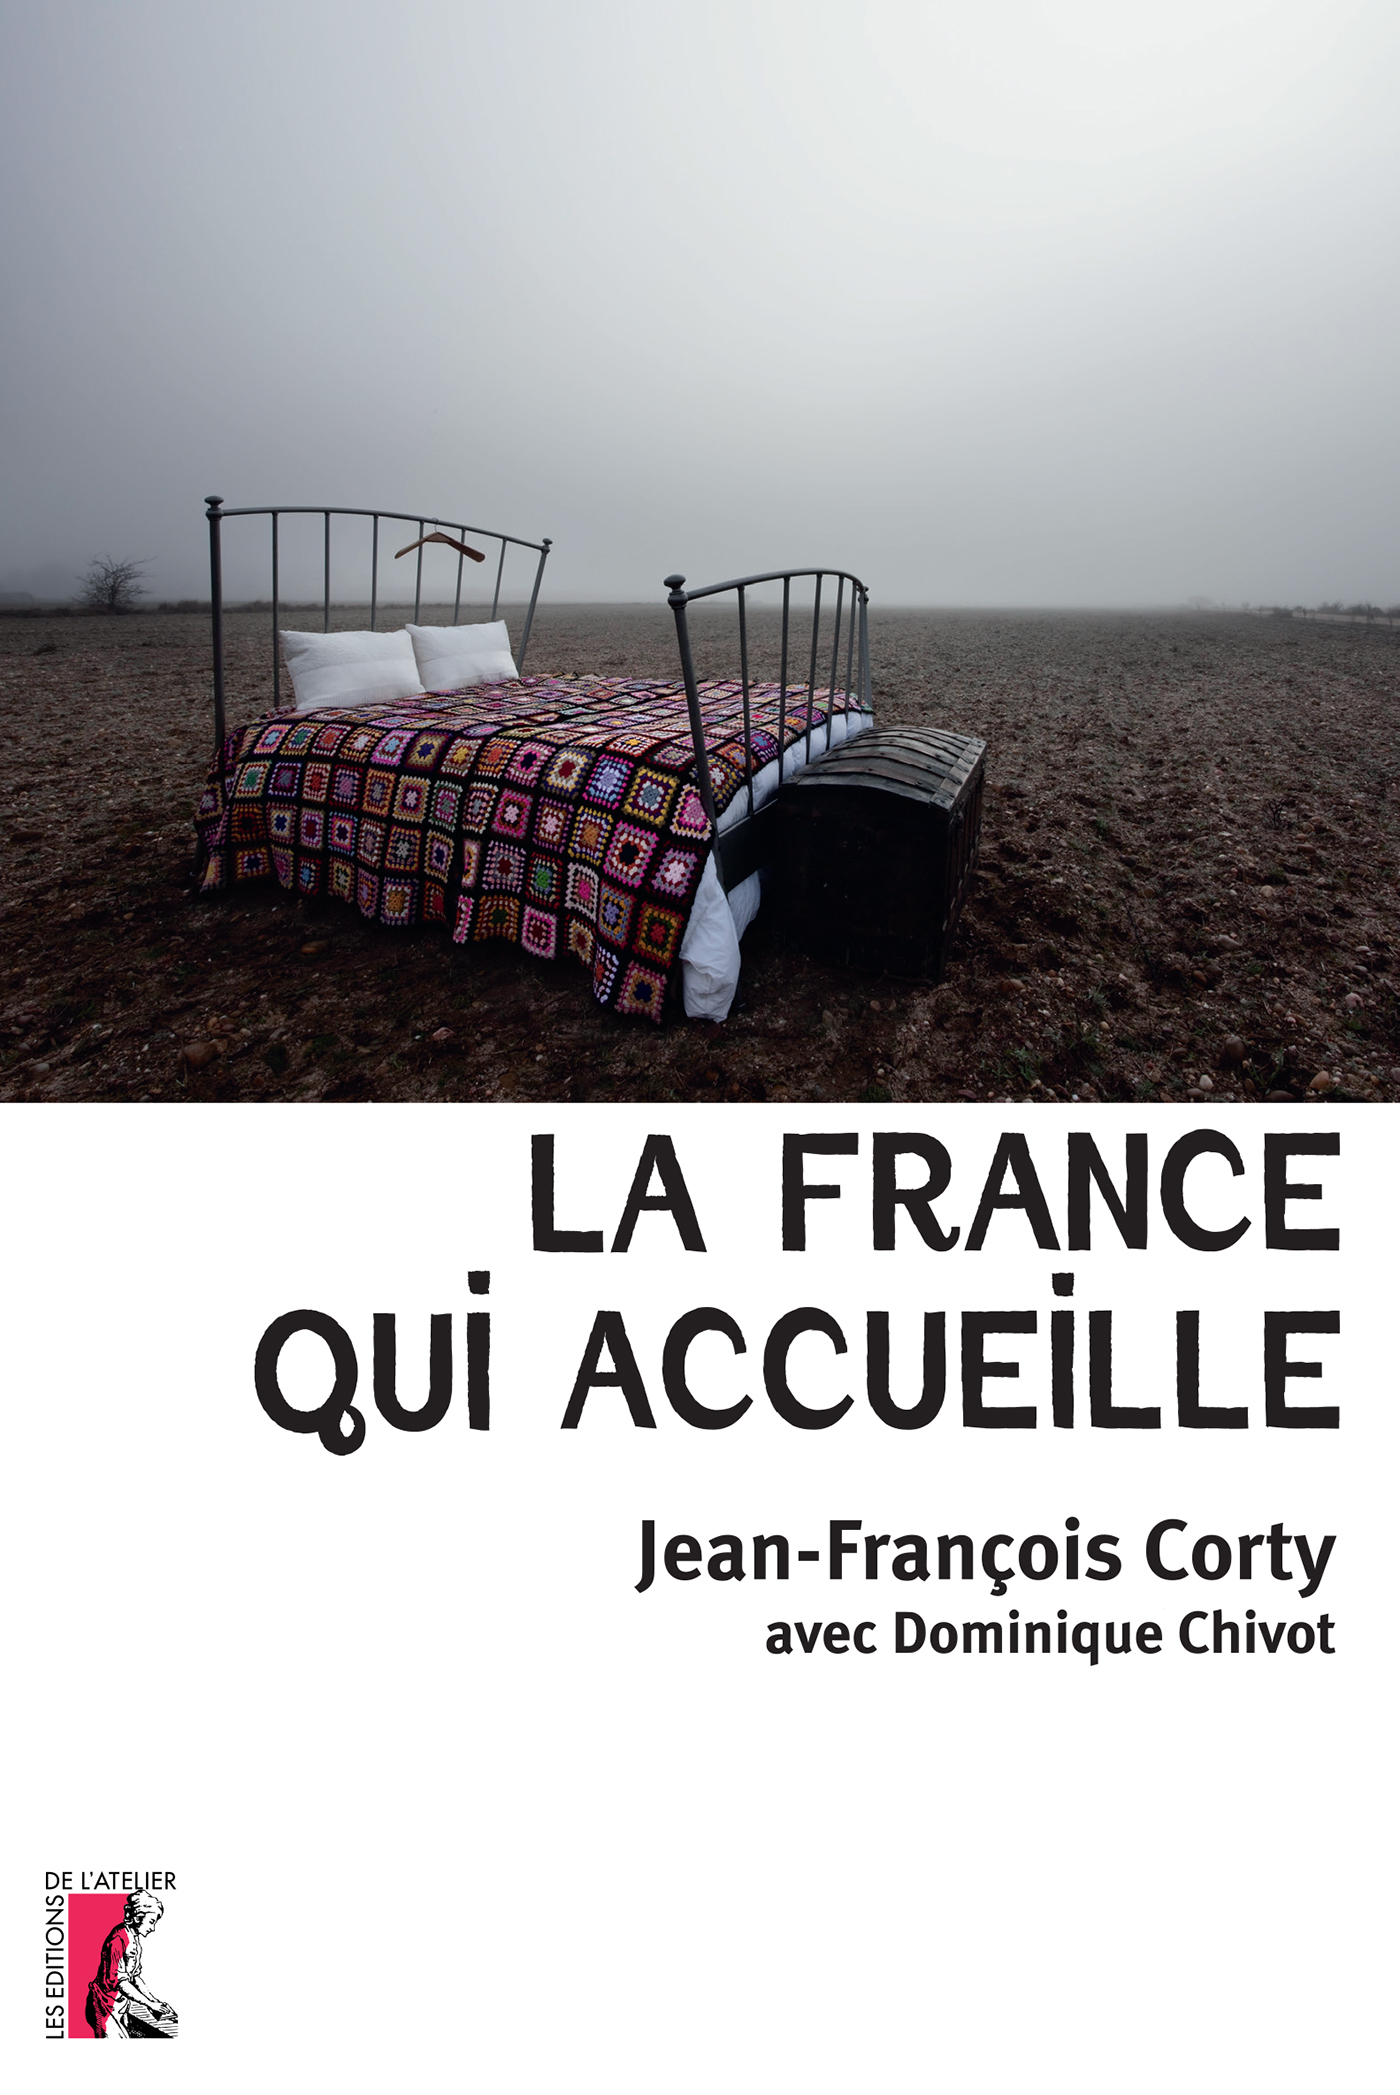 La France qui accueille - Jean-François Corty, Dominique Chivot - Éditions de l'Atelier